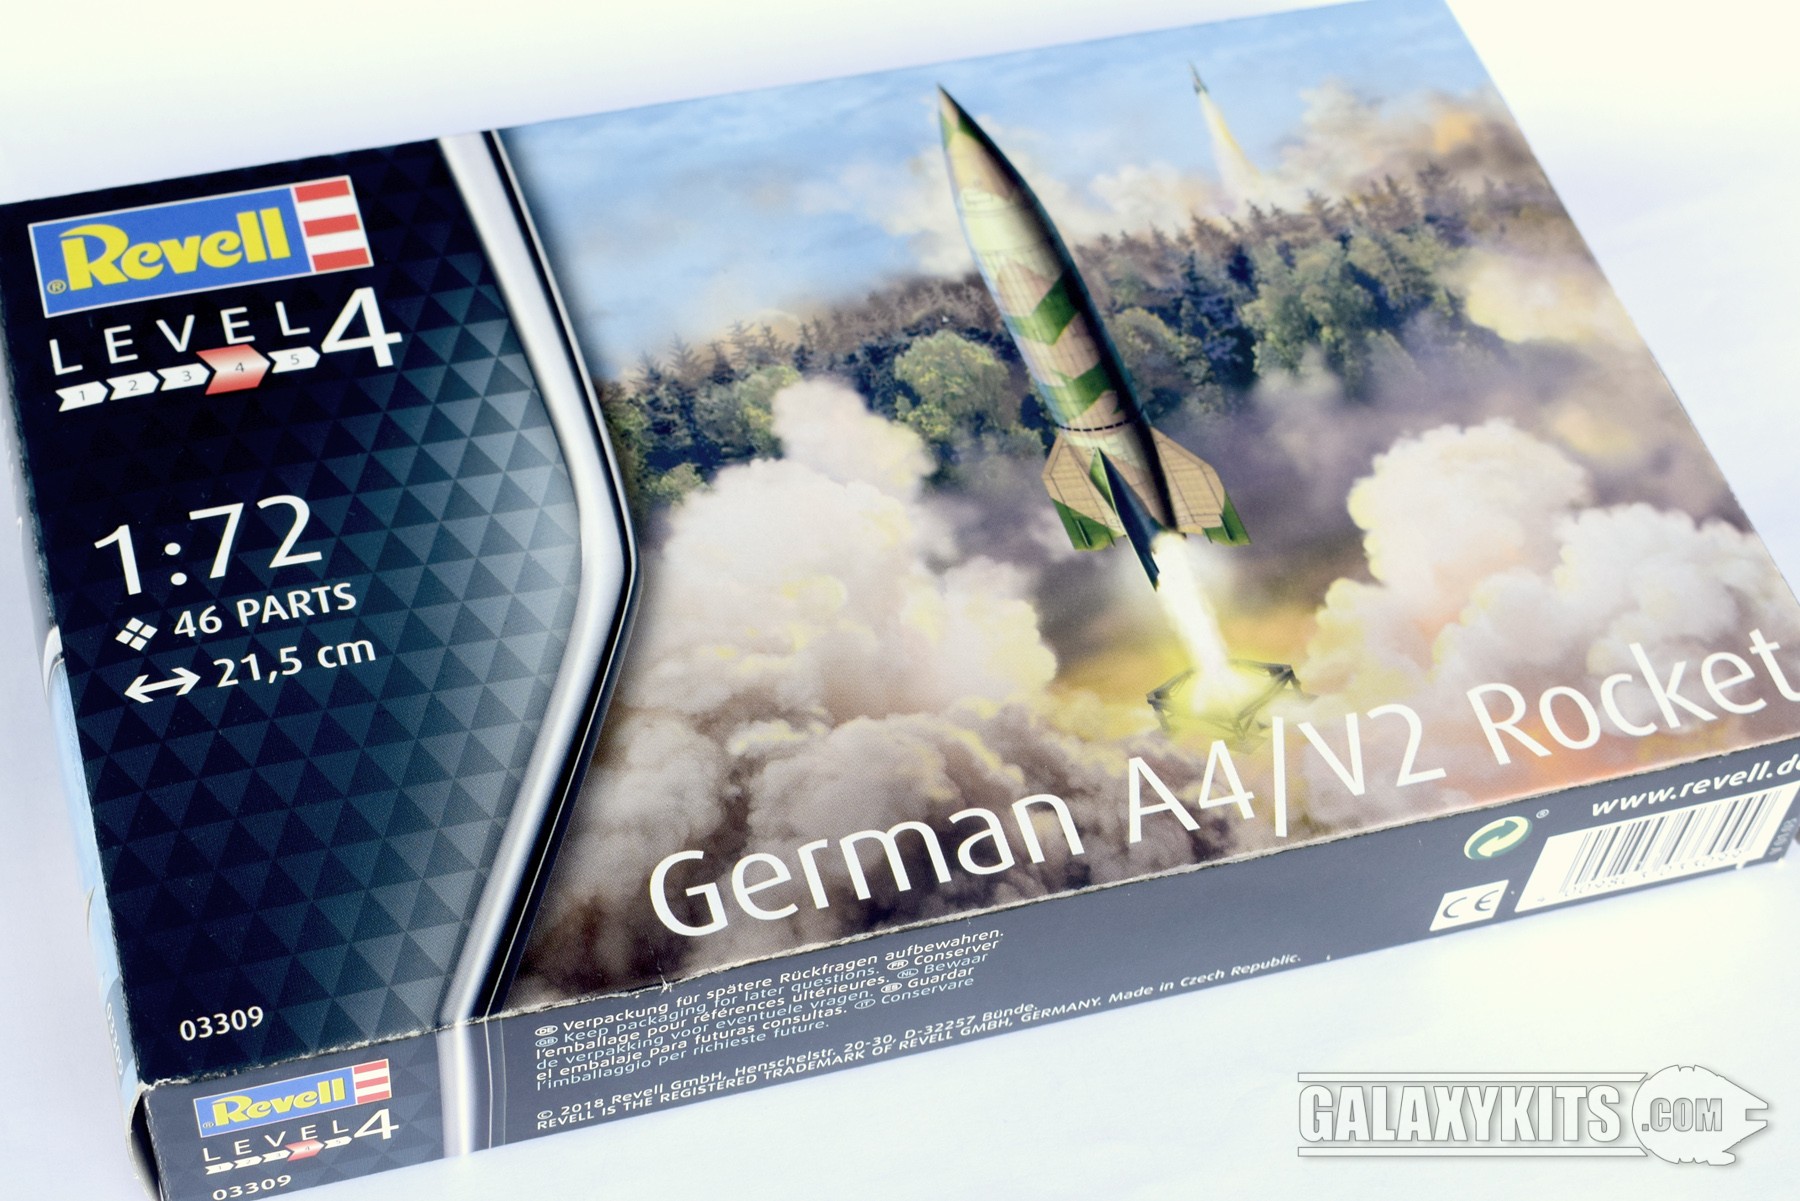 German A4/V2 Rocket / 1:72 / Revell